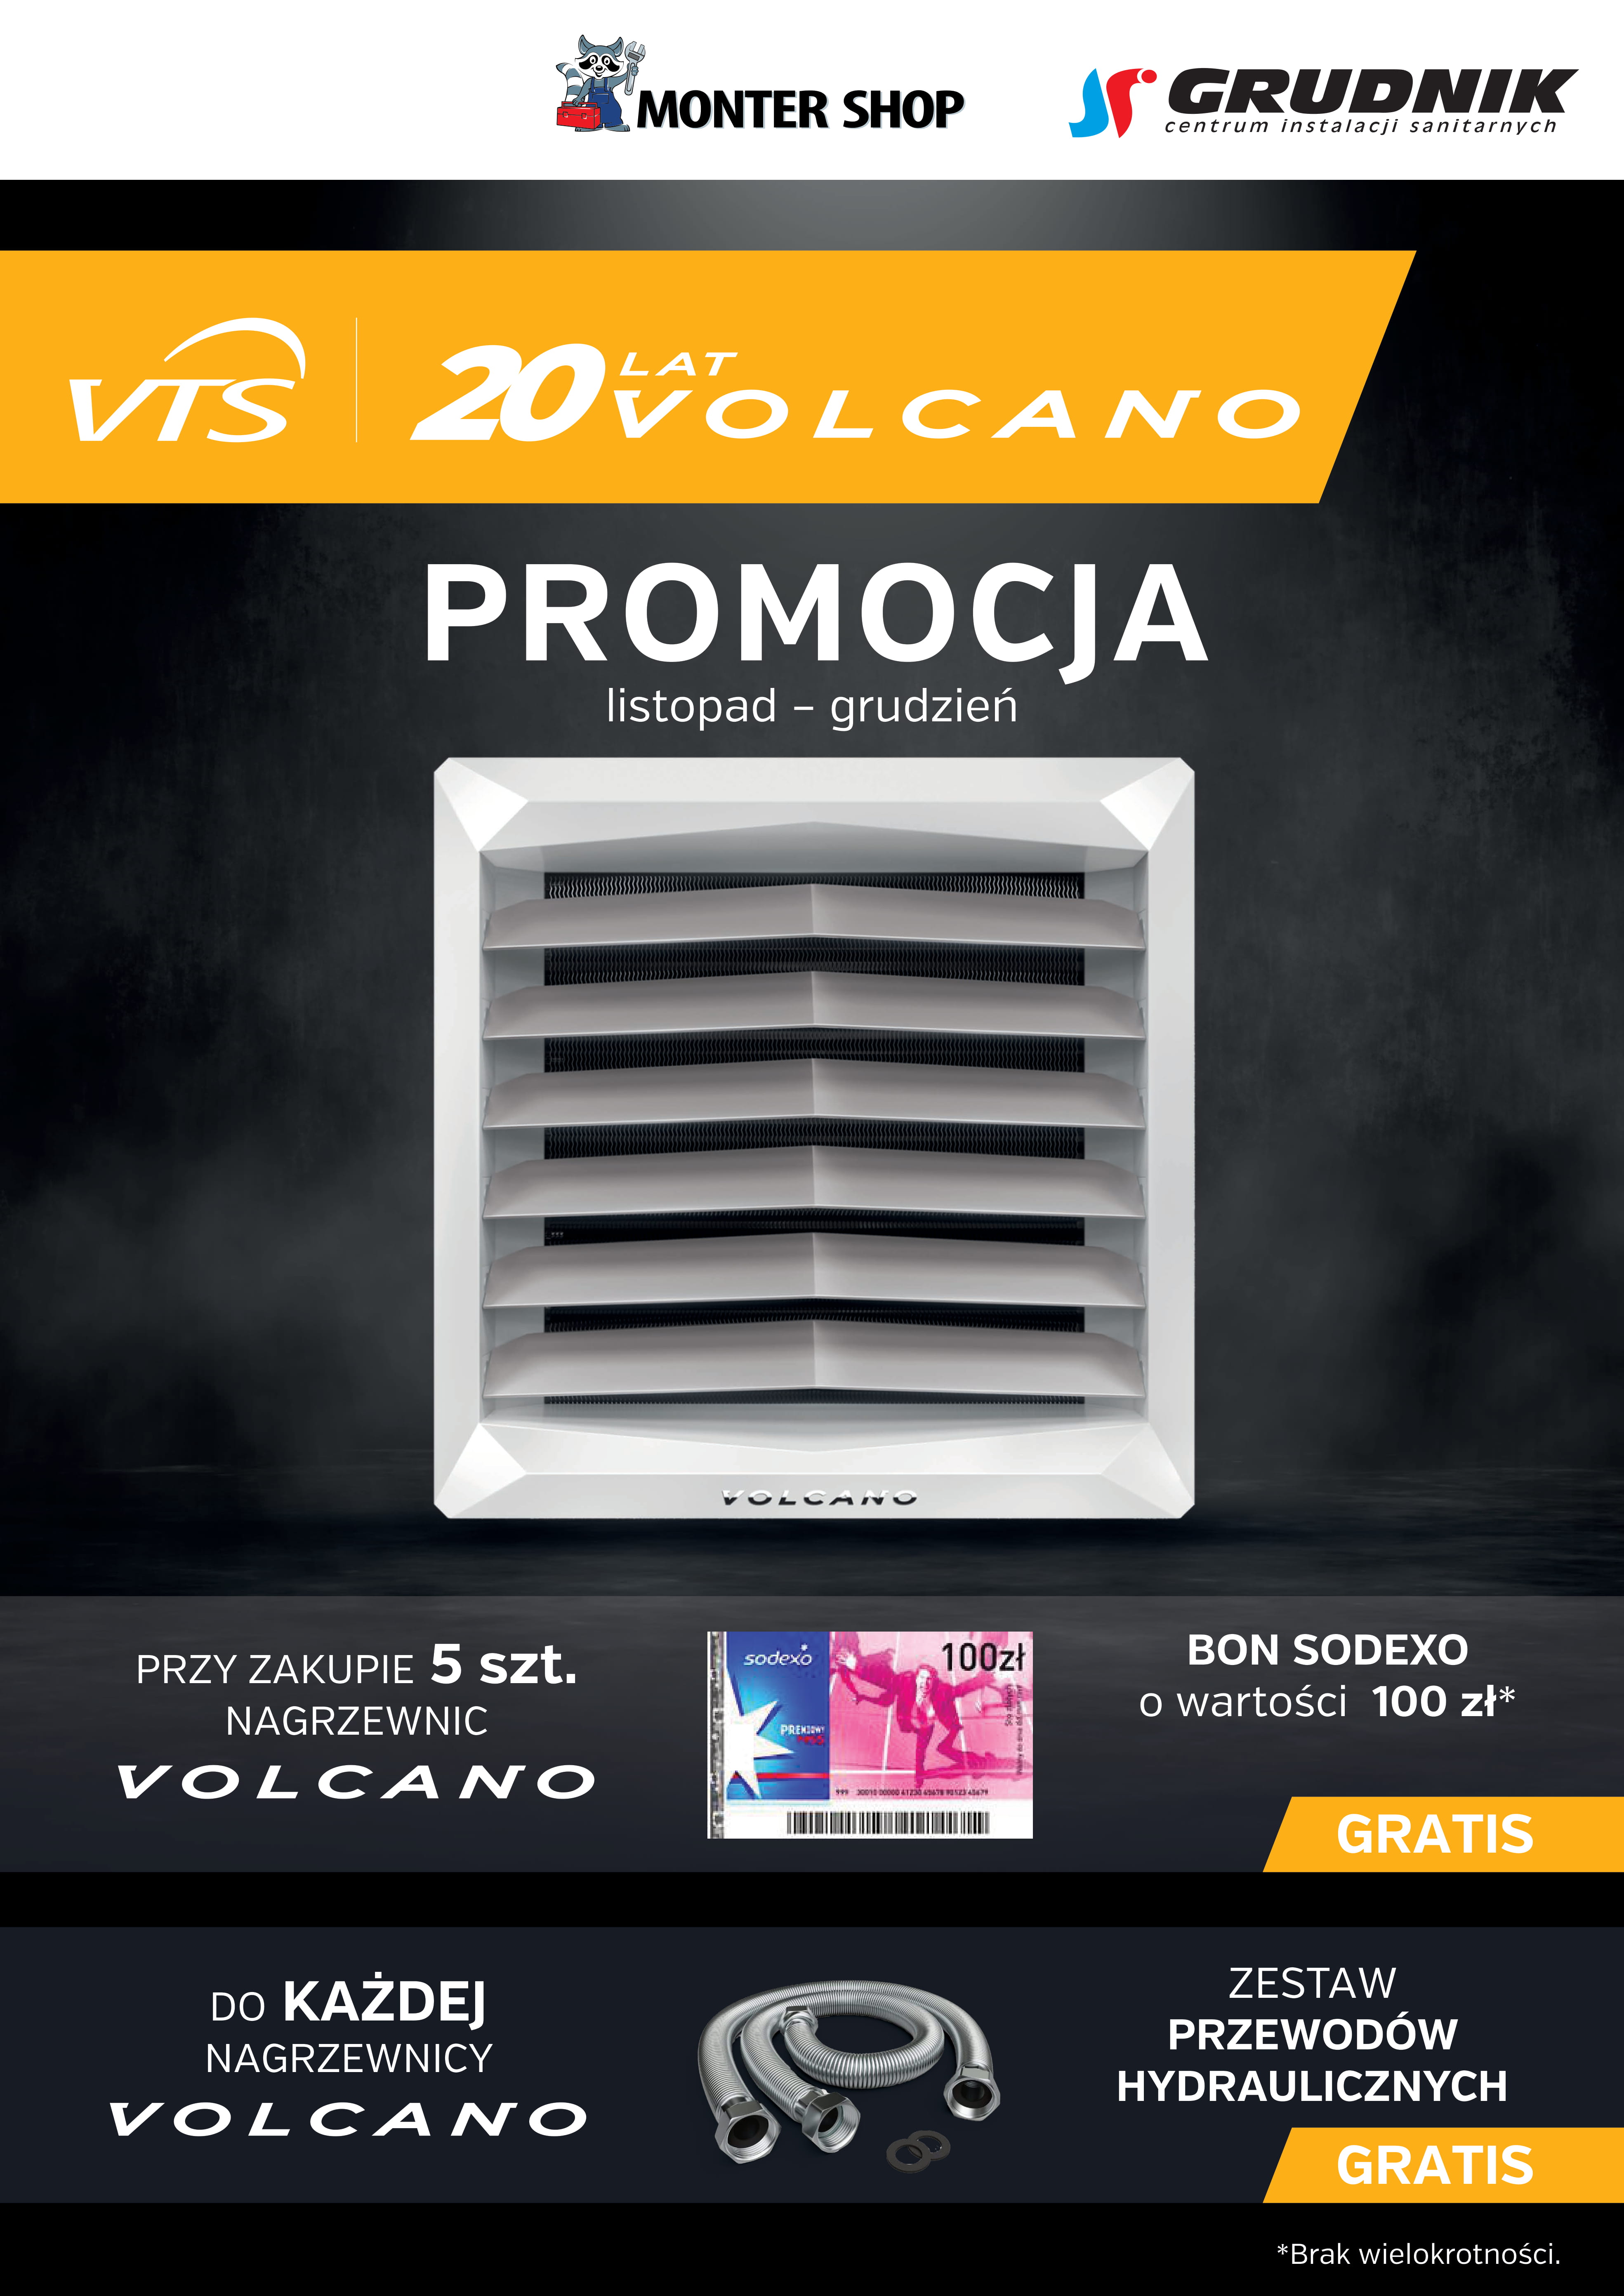 Promocja VTS Volcano